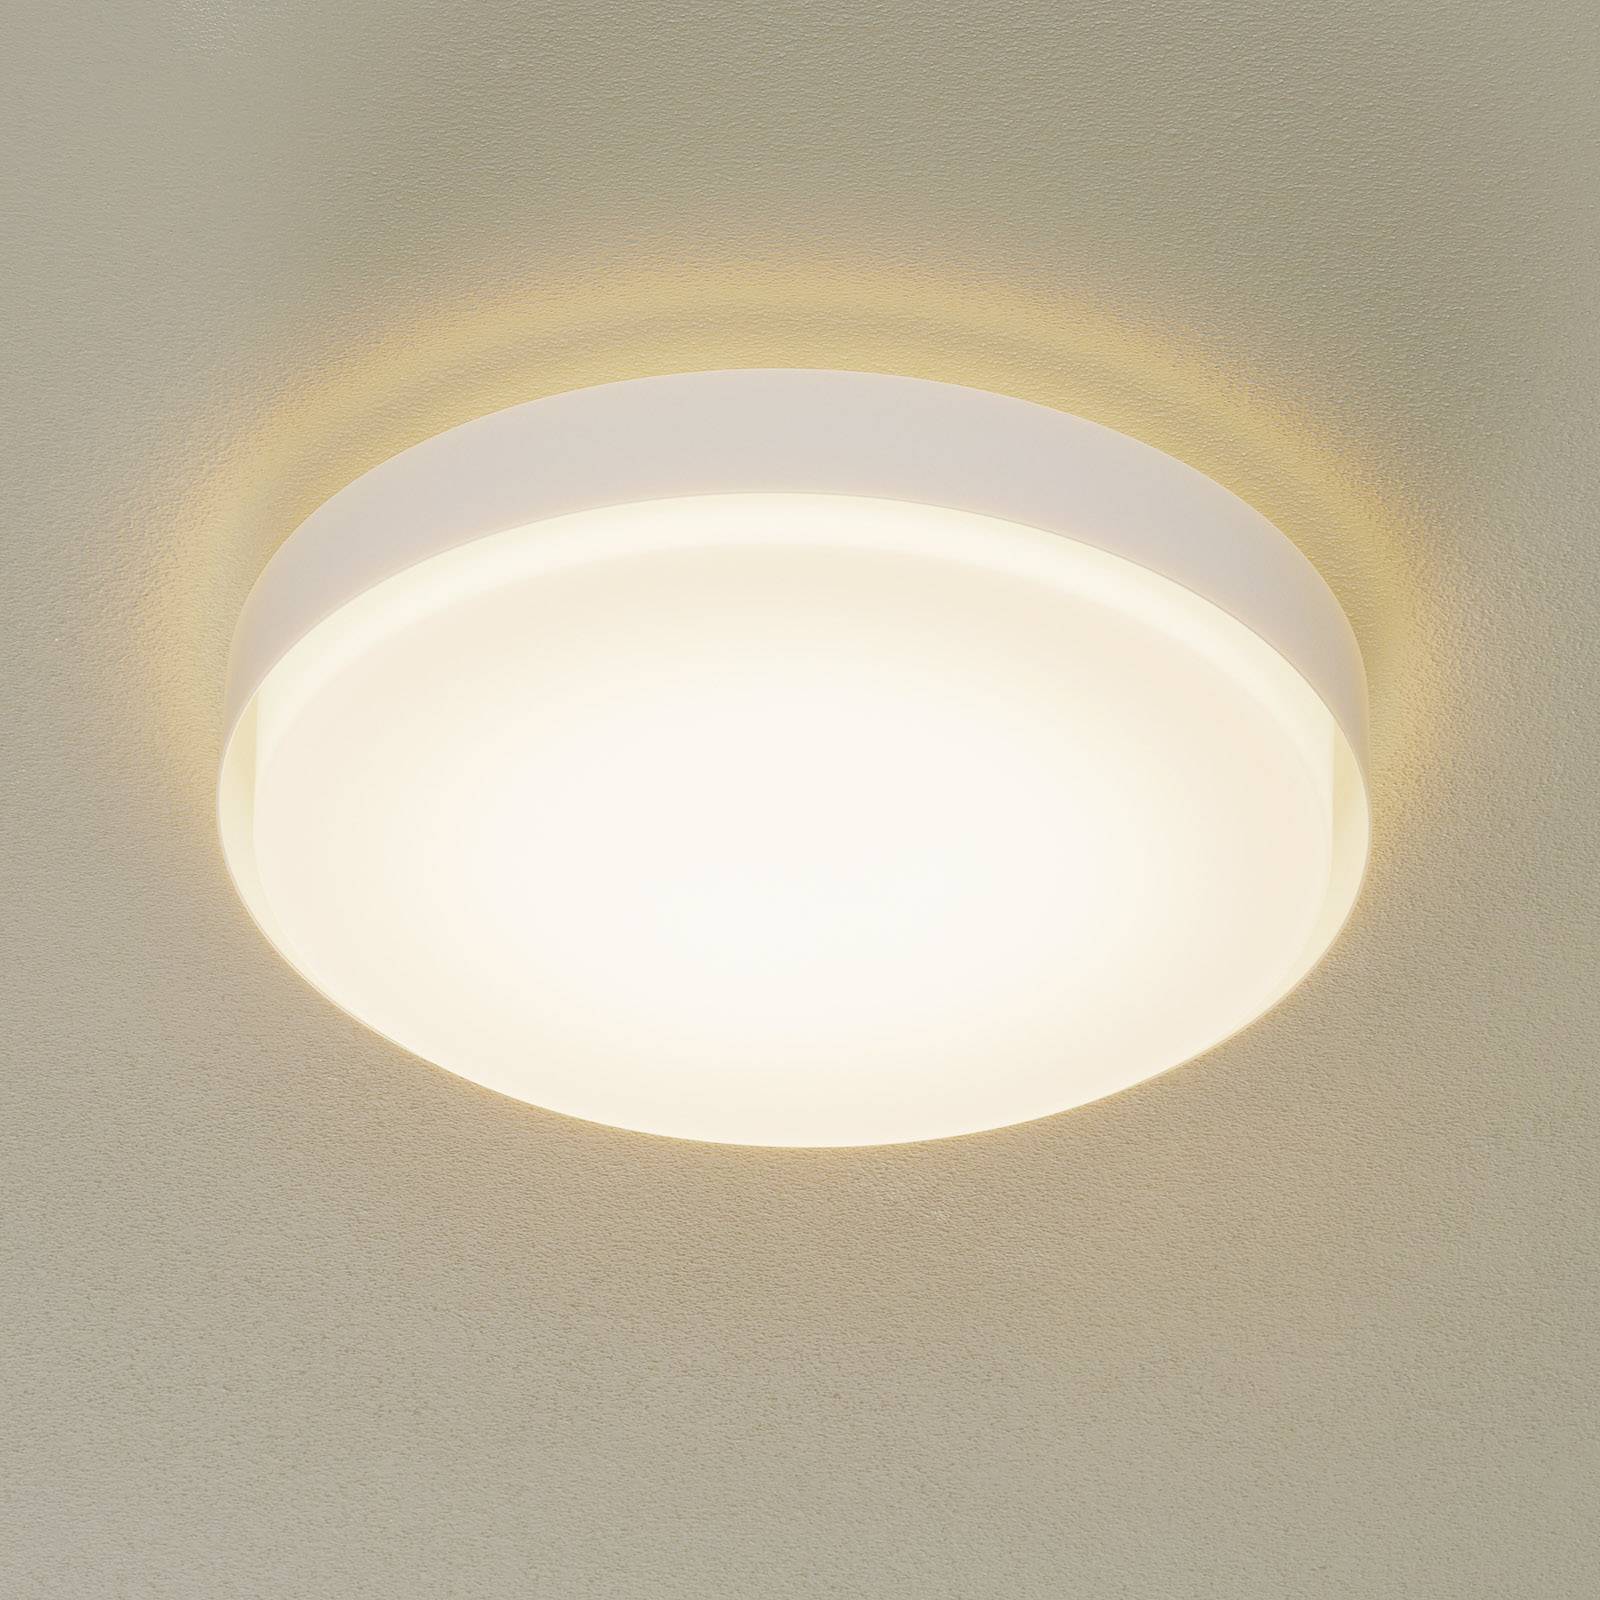 BEGA 34279 LED-Deckenleuchte, weiß, Ø 42 cm, DALI